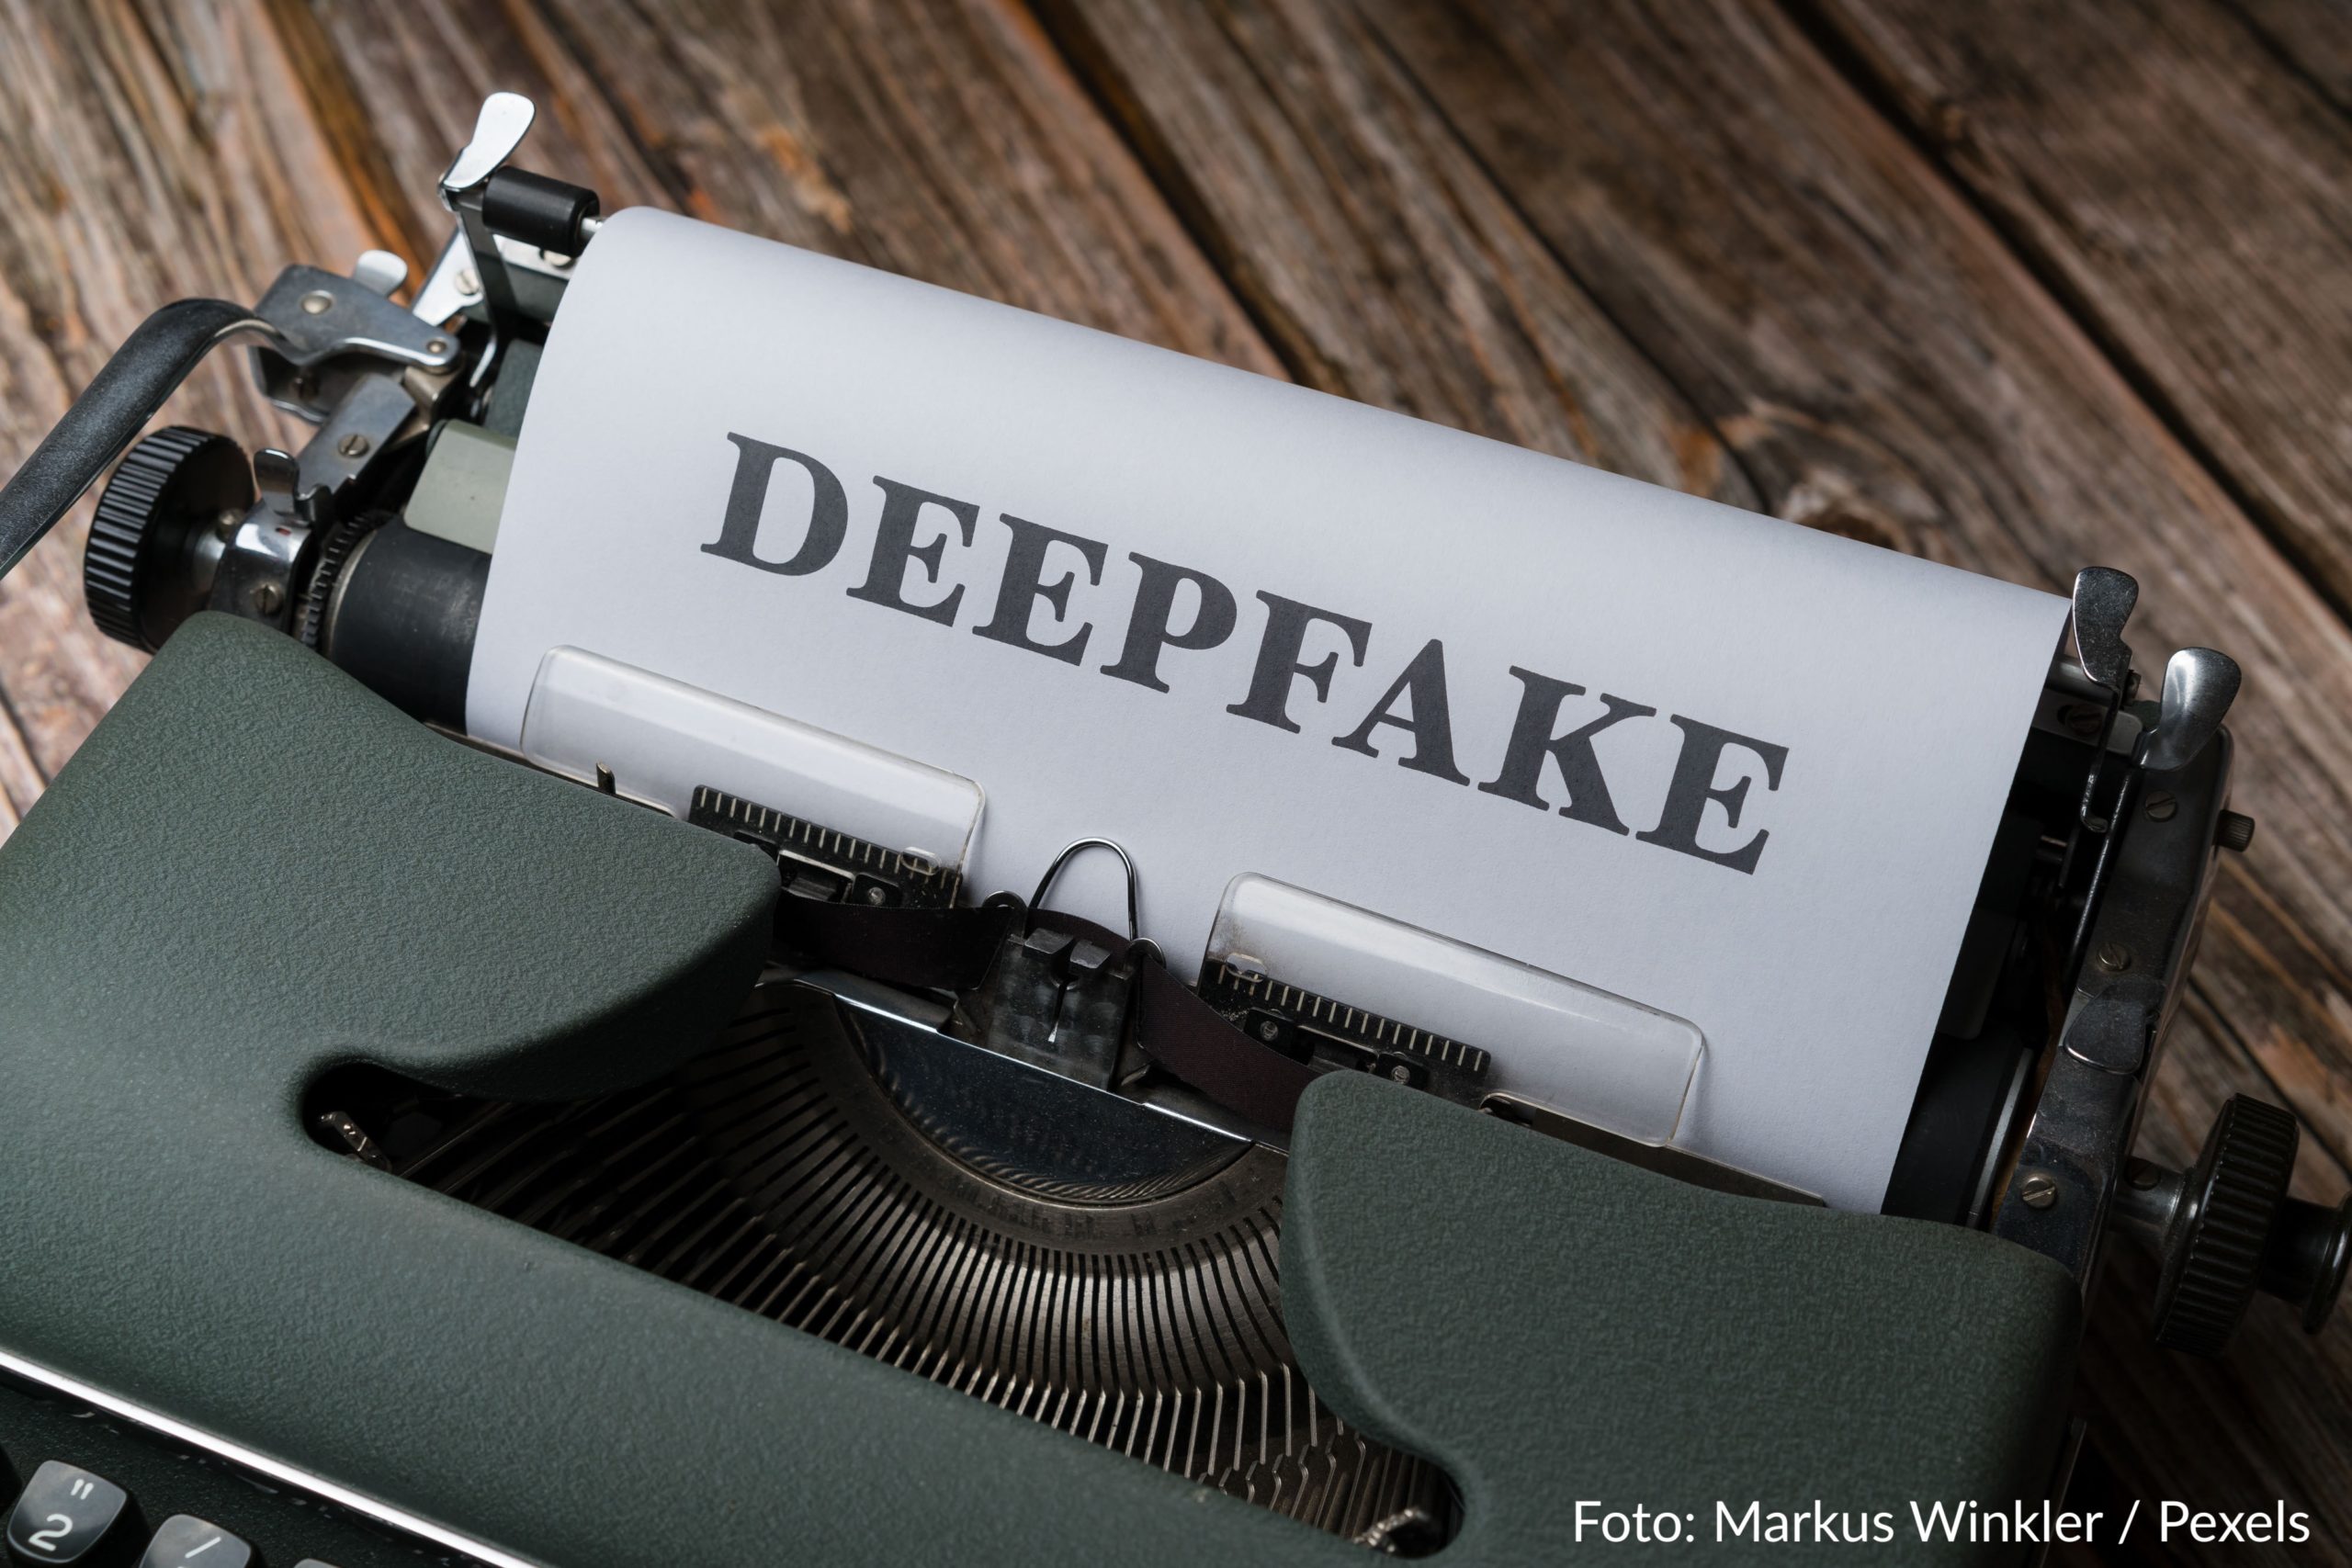 Auf dem Bild ist eine Schreibmaschine abgebildet, darin heftet ein Blatt Papier, auf dem fettgedruckt in Großbuchstaben das Wort Deepfake geschrieben steht.